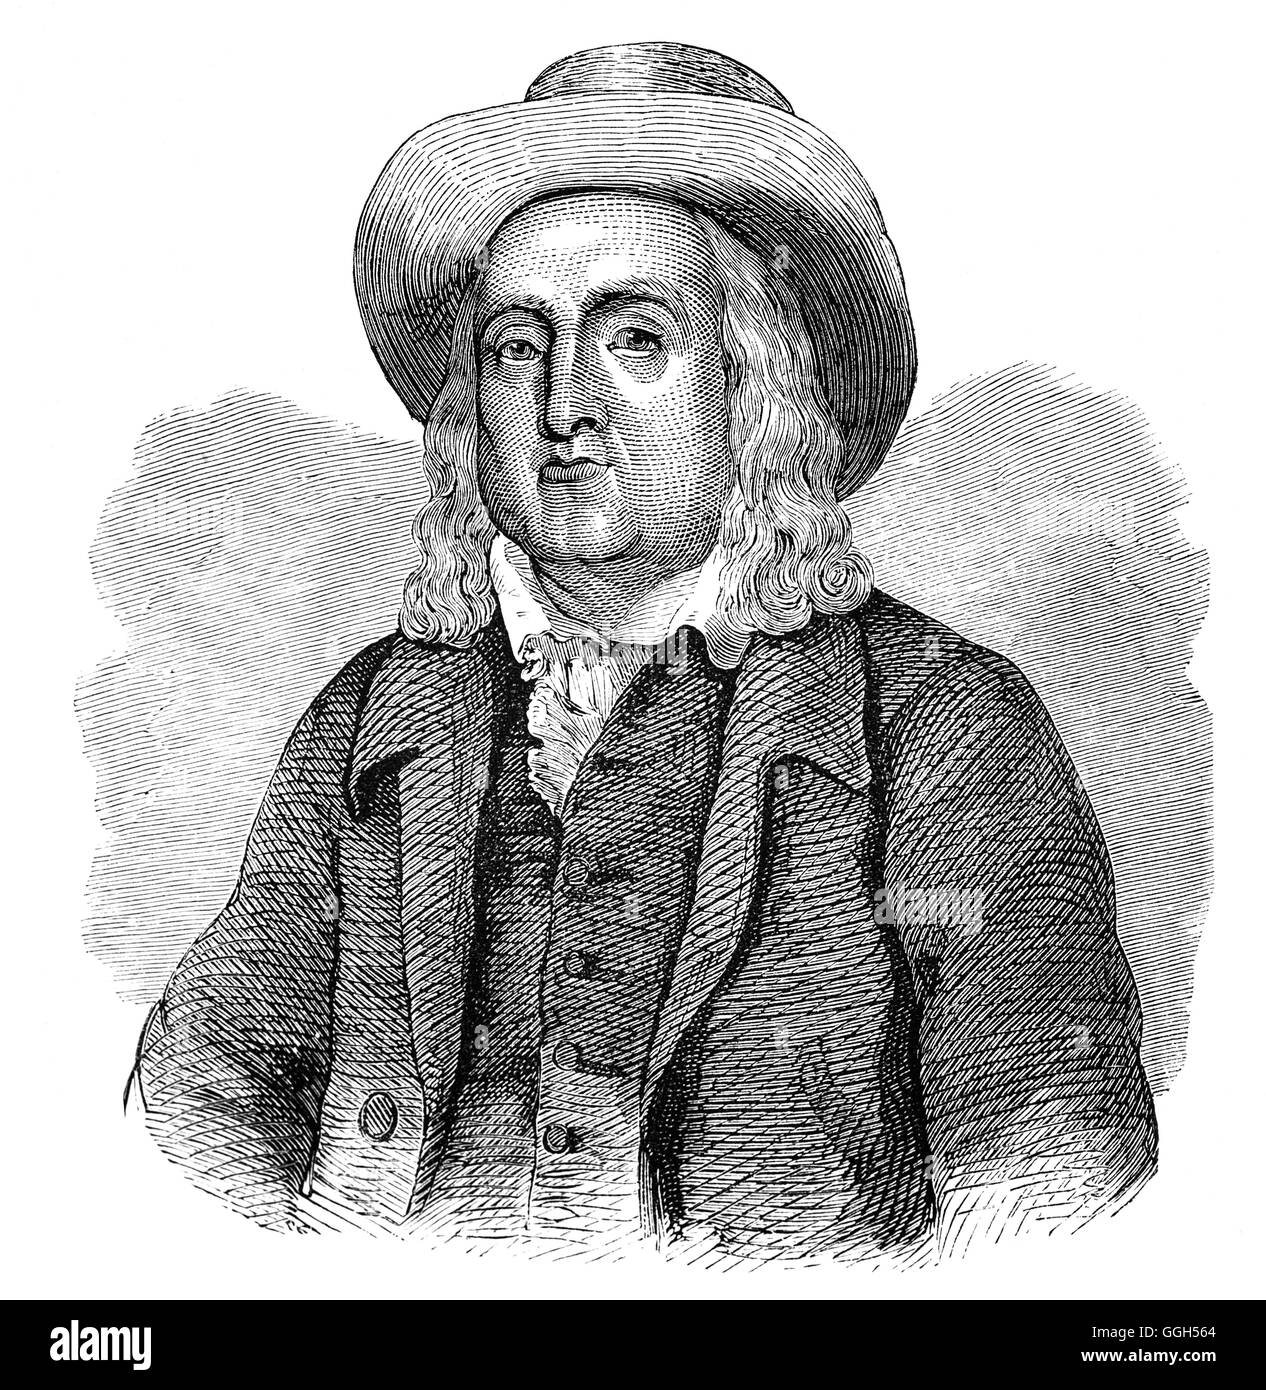 Jeremy Bentham (1747 - 1832) era un filosofo inglese, giurista, e riformista sociale. Egli è considerato il fondatore della moderna utilitarismo e caldeggia la creazione di singoli e di libertà economica, la separazione tra Chiesa e Stato, la libertà di espressione, la parità di diritti per le donne, il diritto al divorzio e la depenalizzazione degli atti omosessuali, l abolizione della schiavitù, la pena di morte e la soppressione di punizione fisica, compresa quella dei bambini. Egli è anche diventato noto come uno dei primi sostenitori dei diritti degli animali. Foto Stock